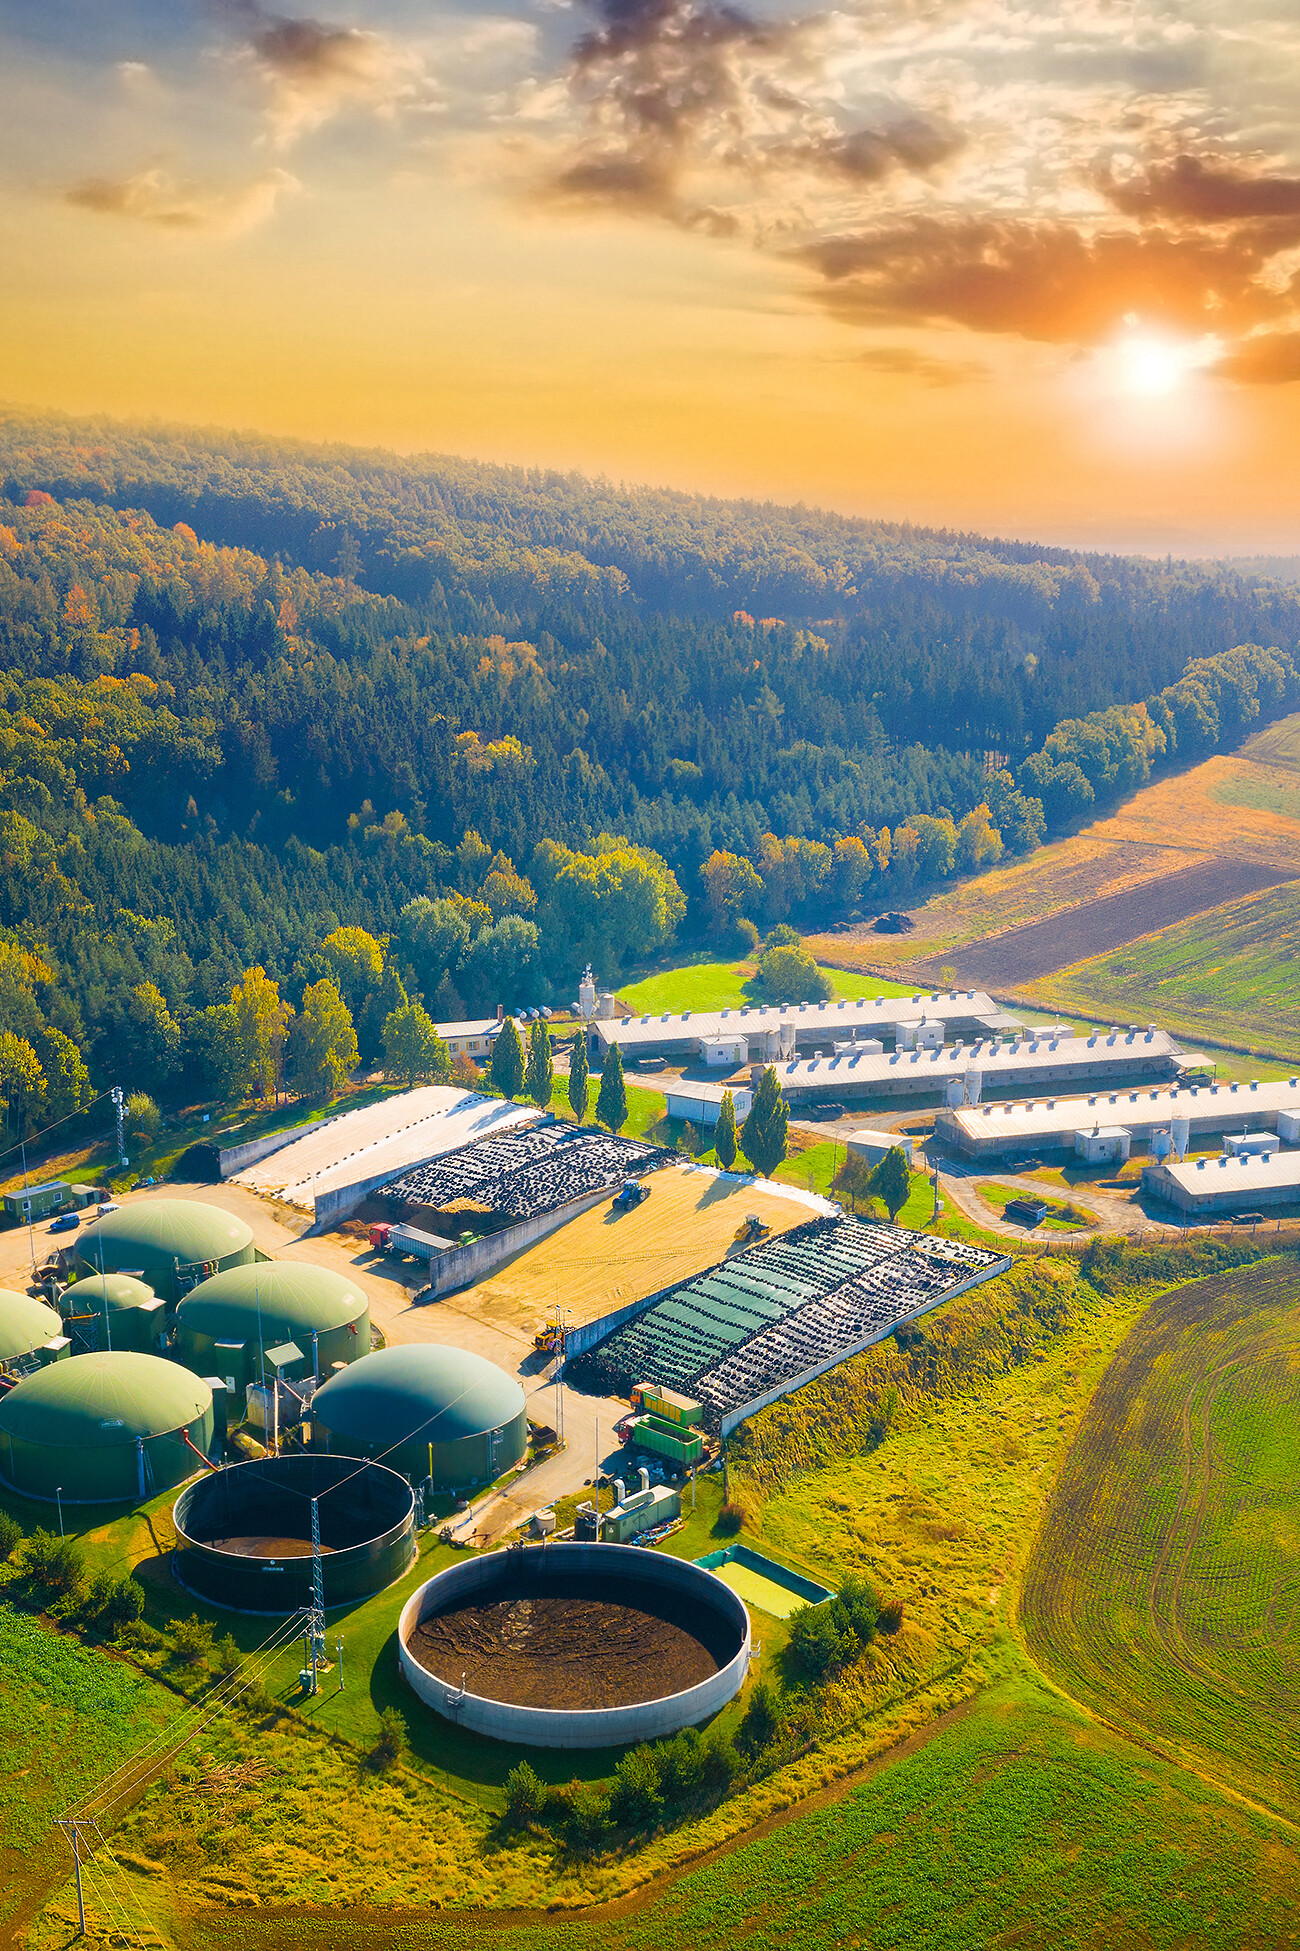 Biogas plant in agricultural landscape.